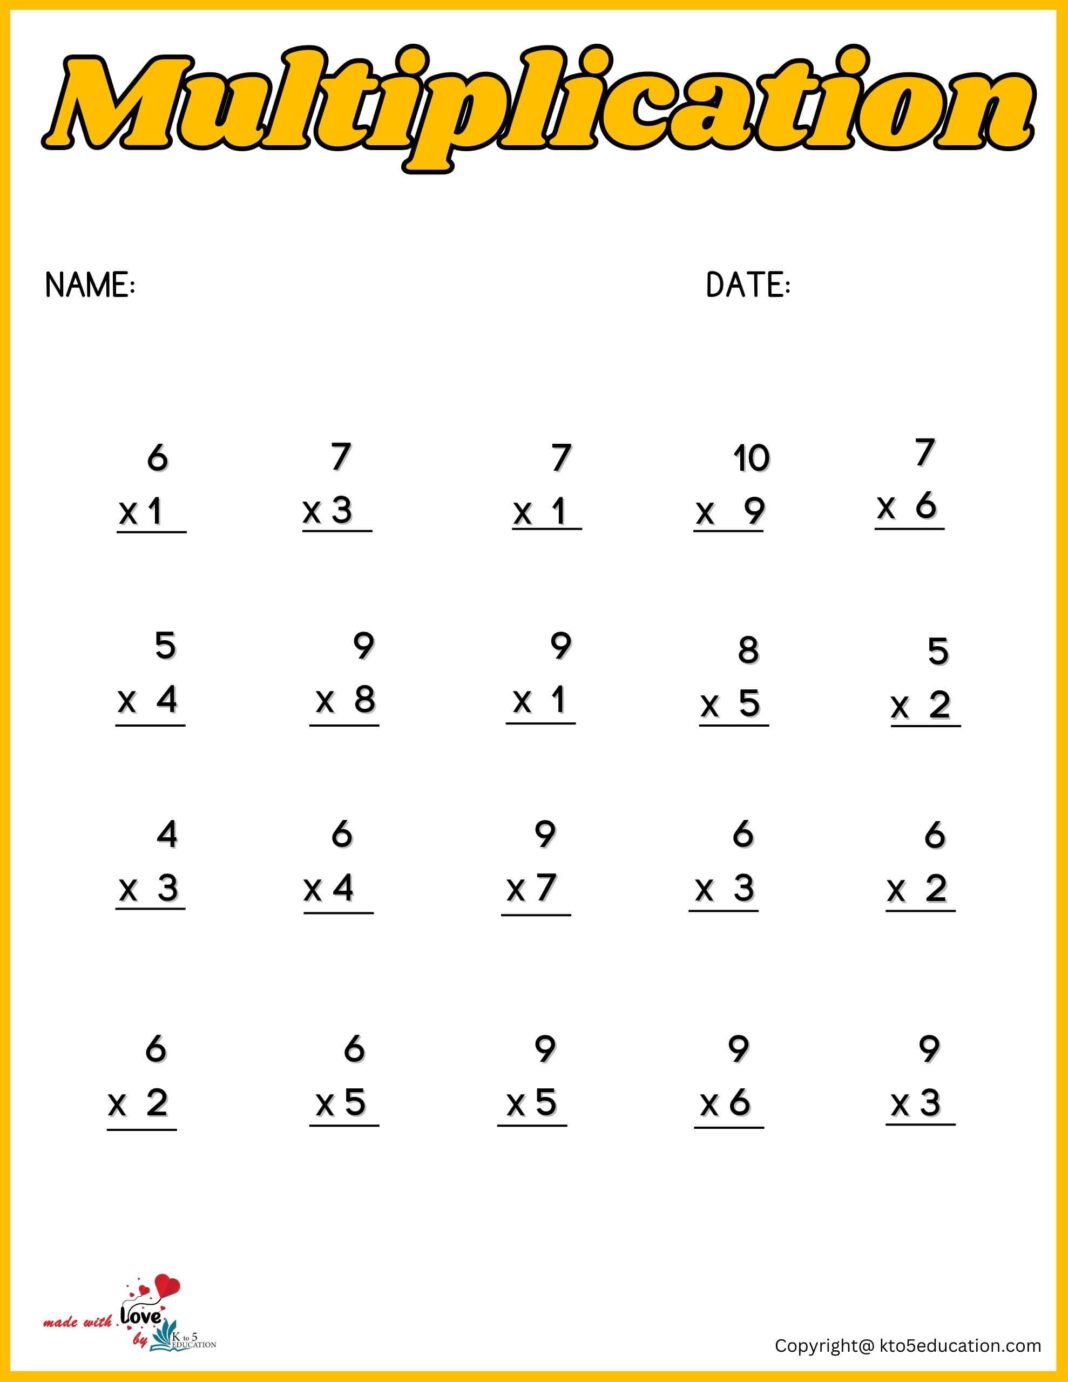 multiplication-math-worksheet-free-download